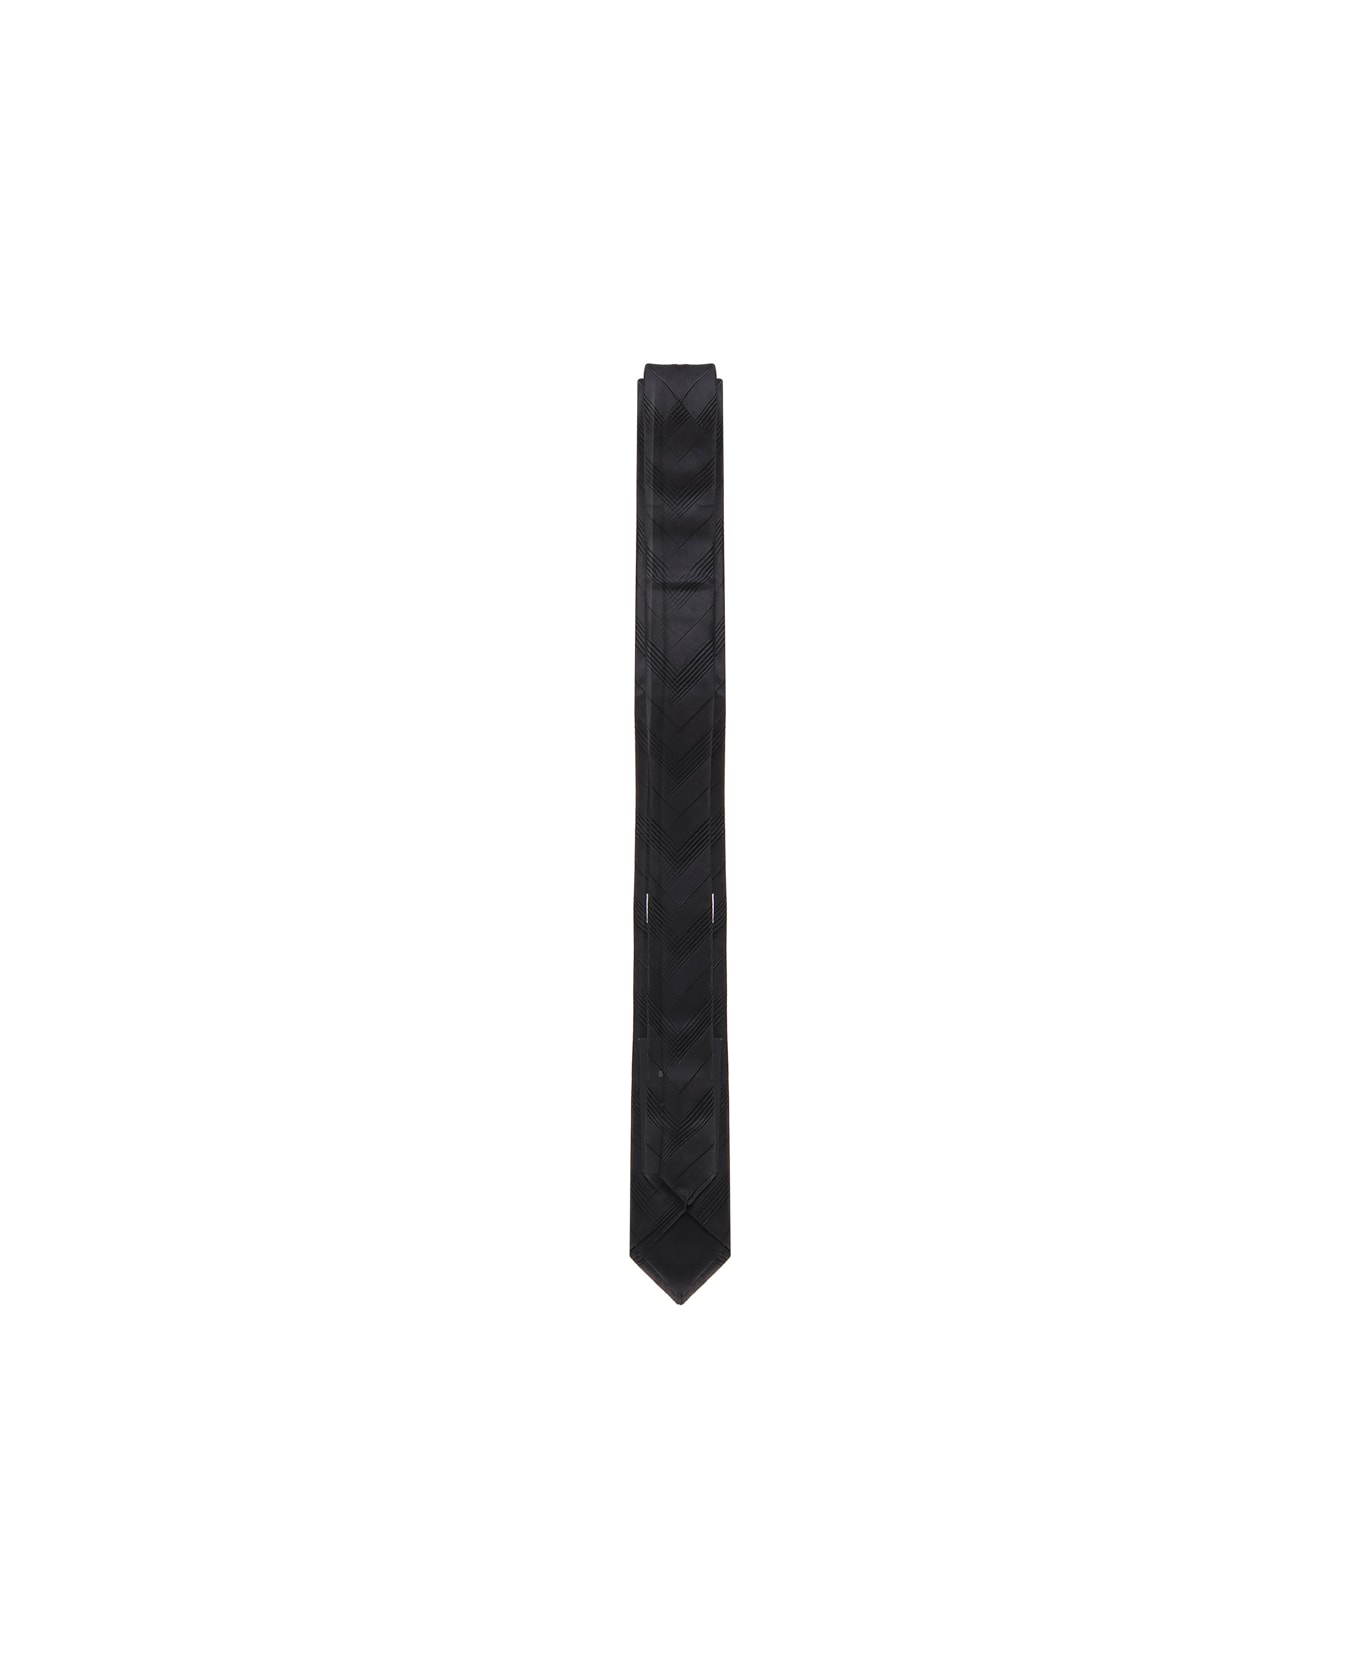 Saint Laurent Striped Tie - BLACK/BLACK